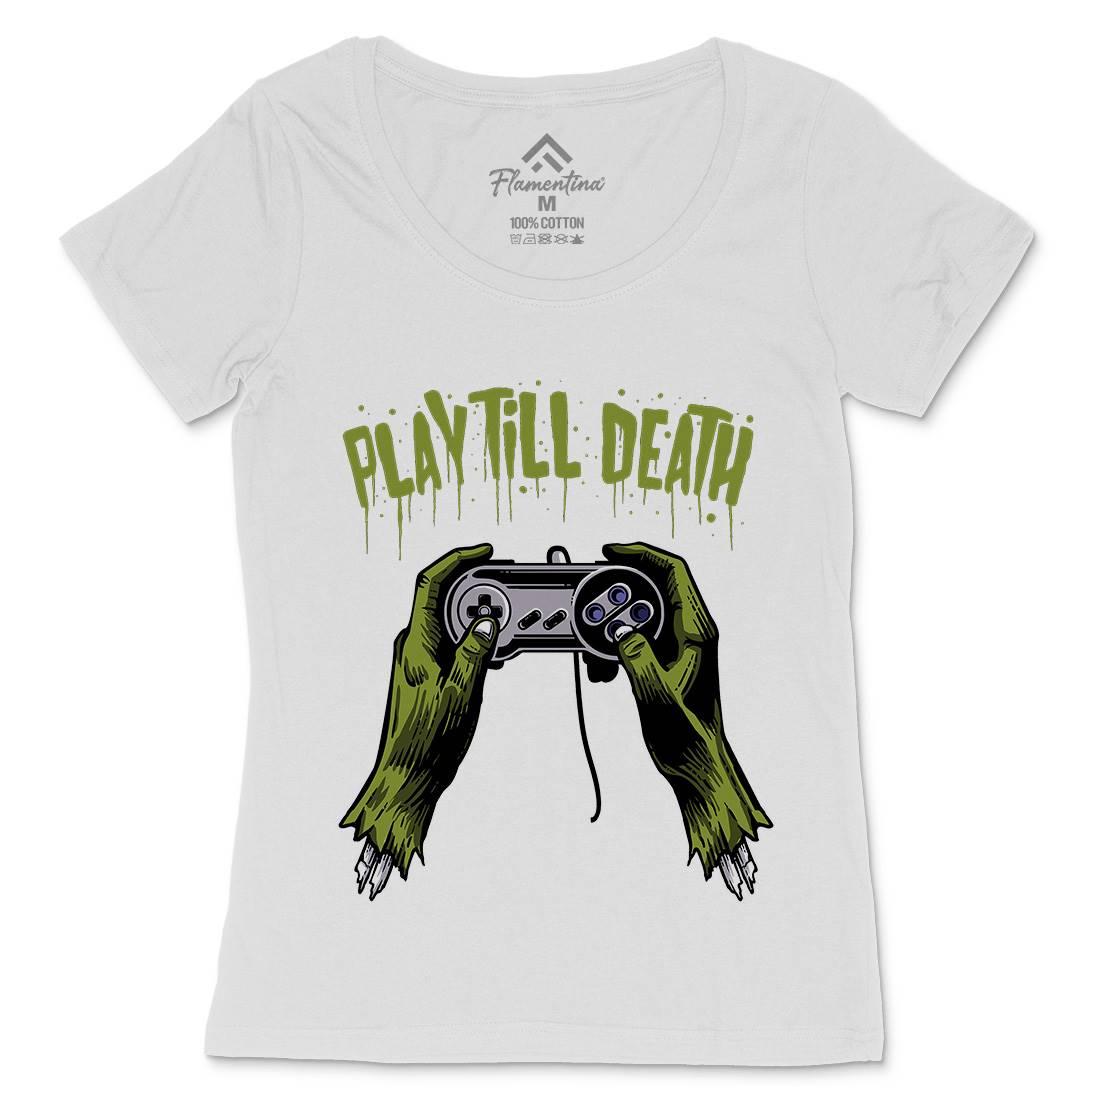 Play Till Death Womens Scoop Neck T-Shirt Geek A561